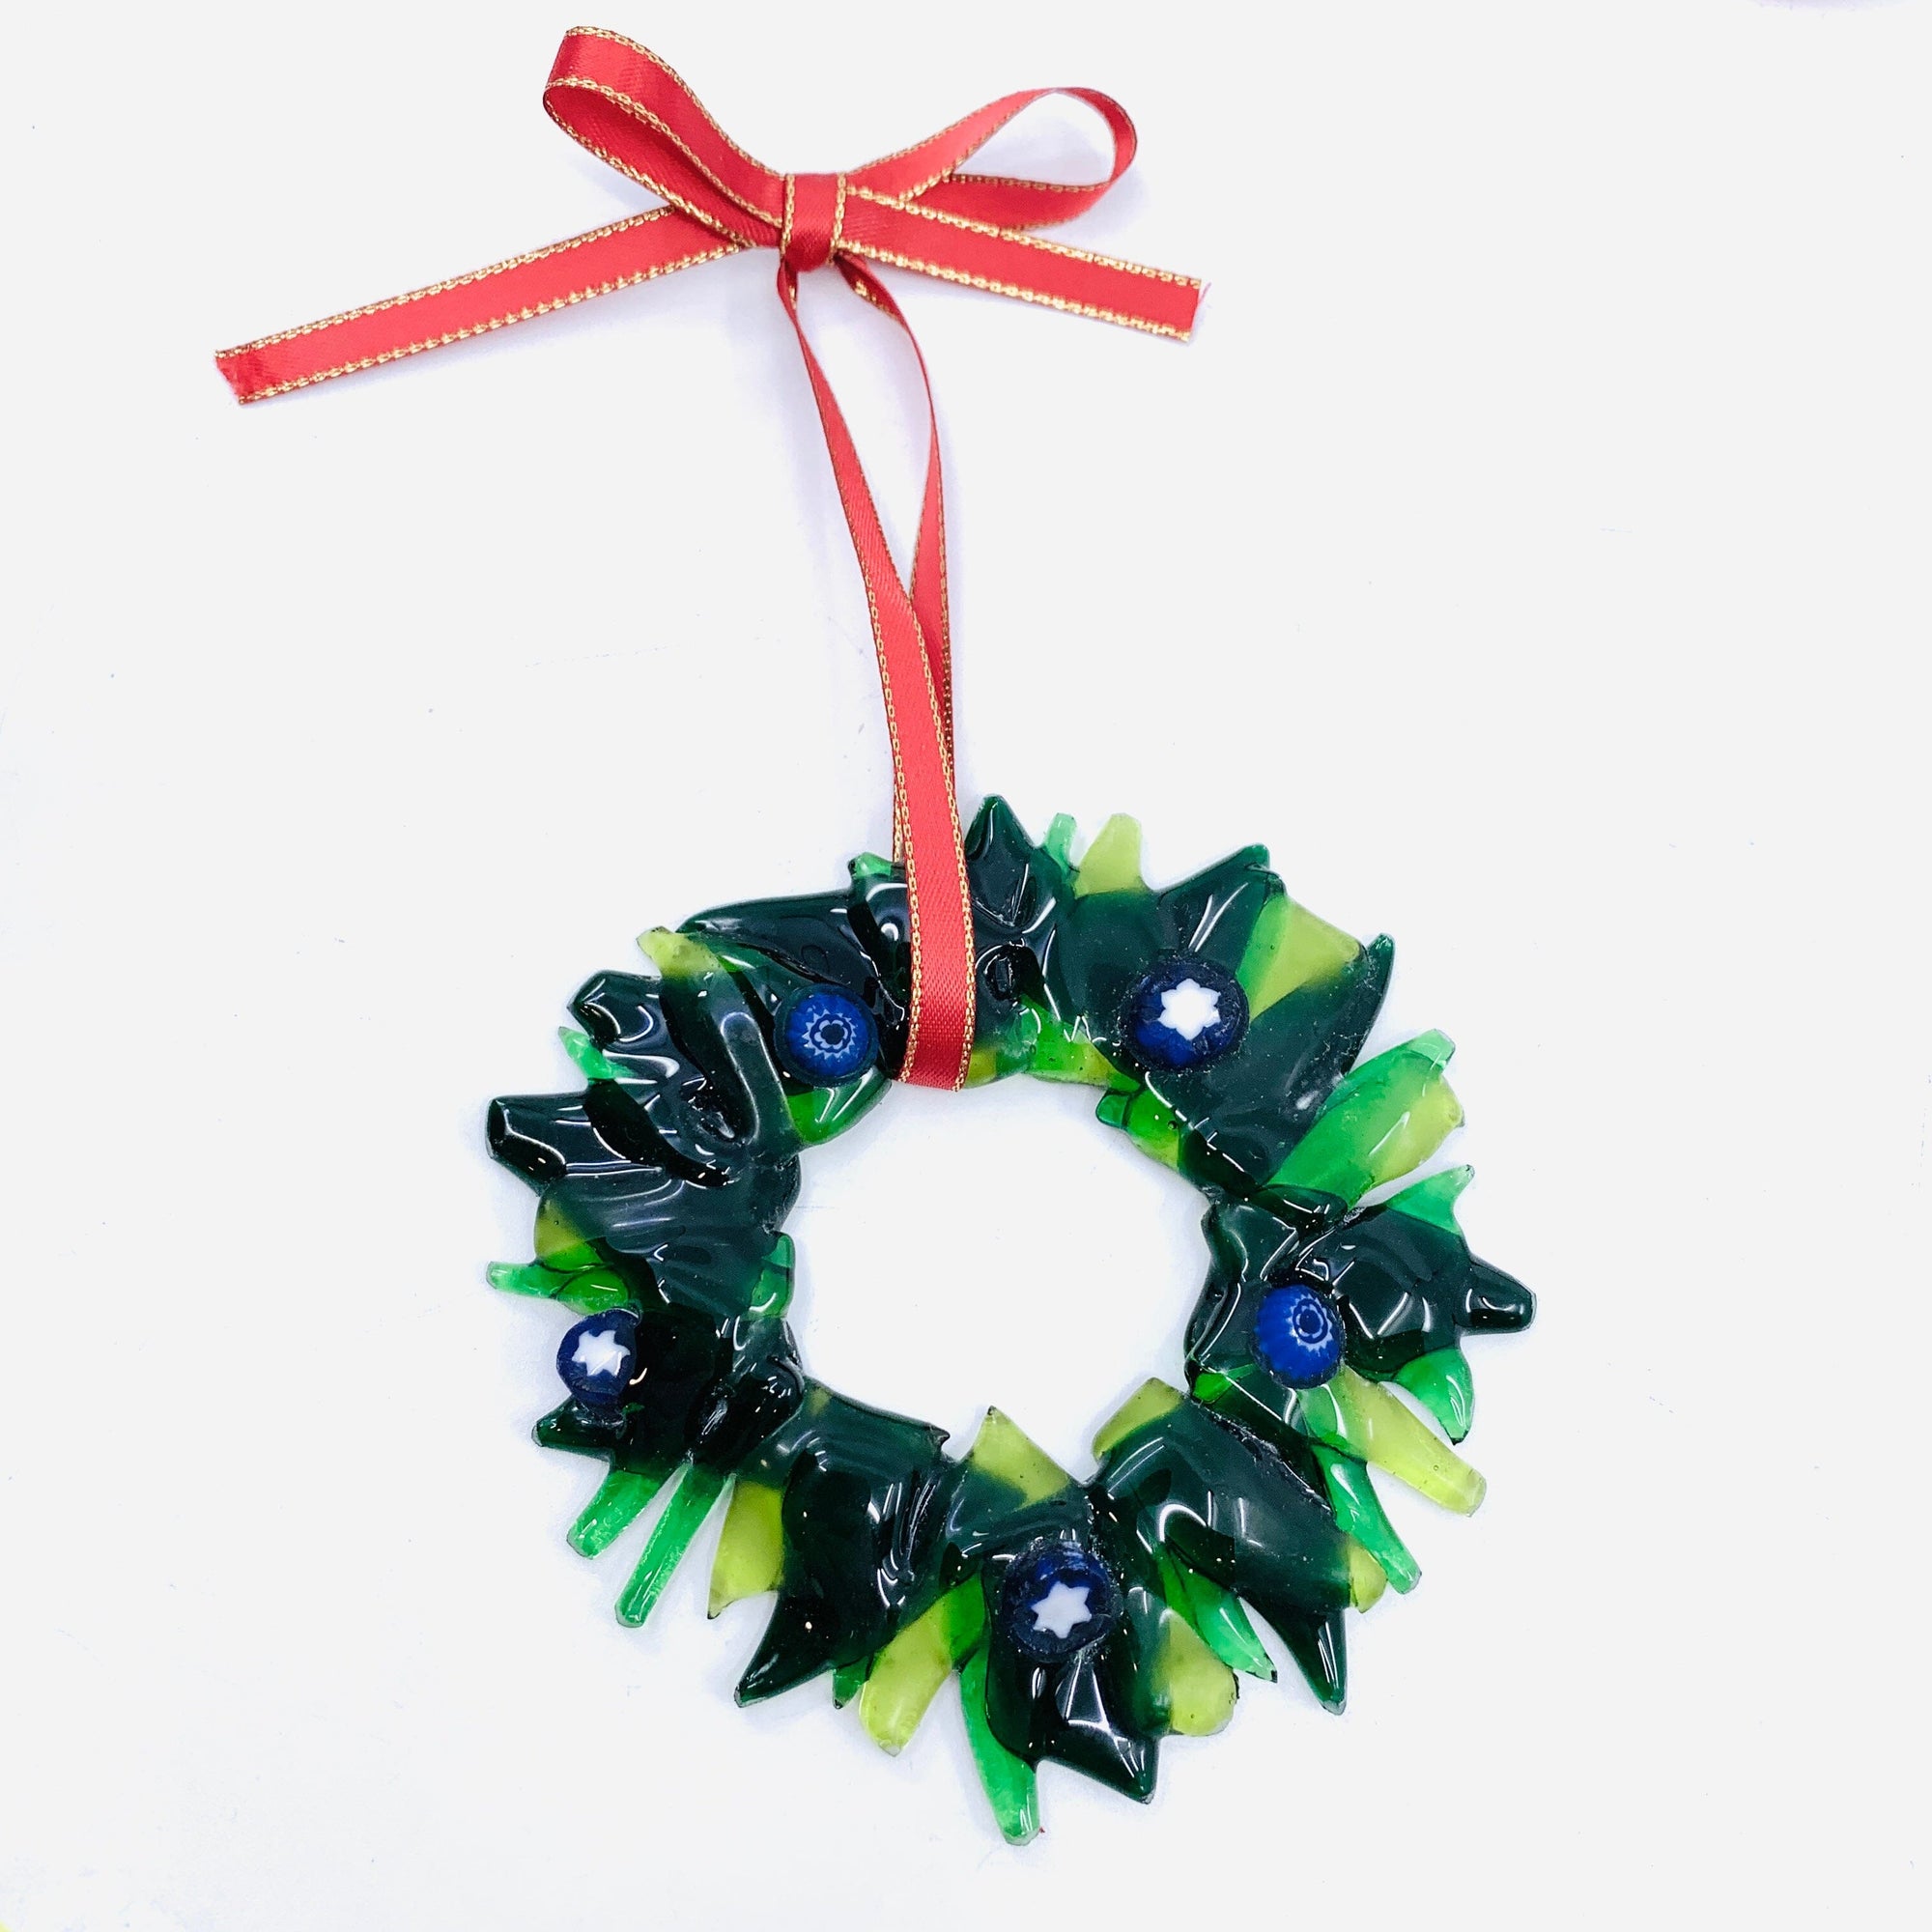 Fused Glass Festive Wreath Ornament 5 Ornament Jean 